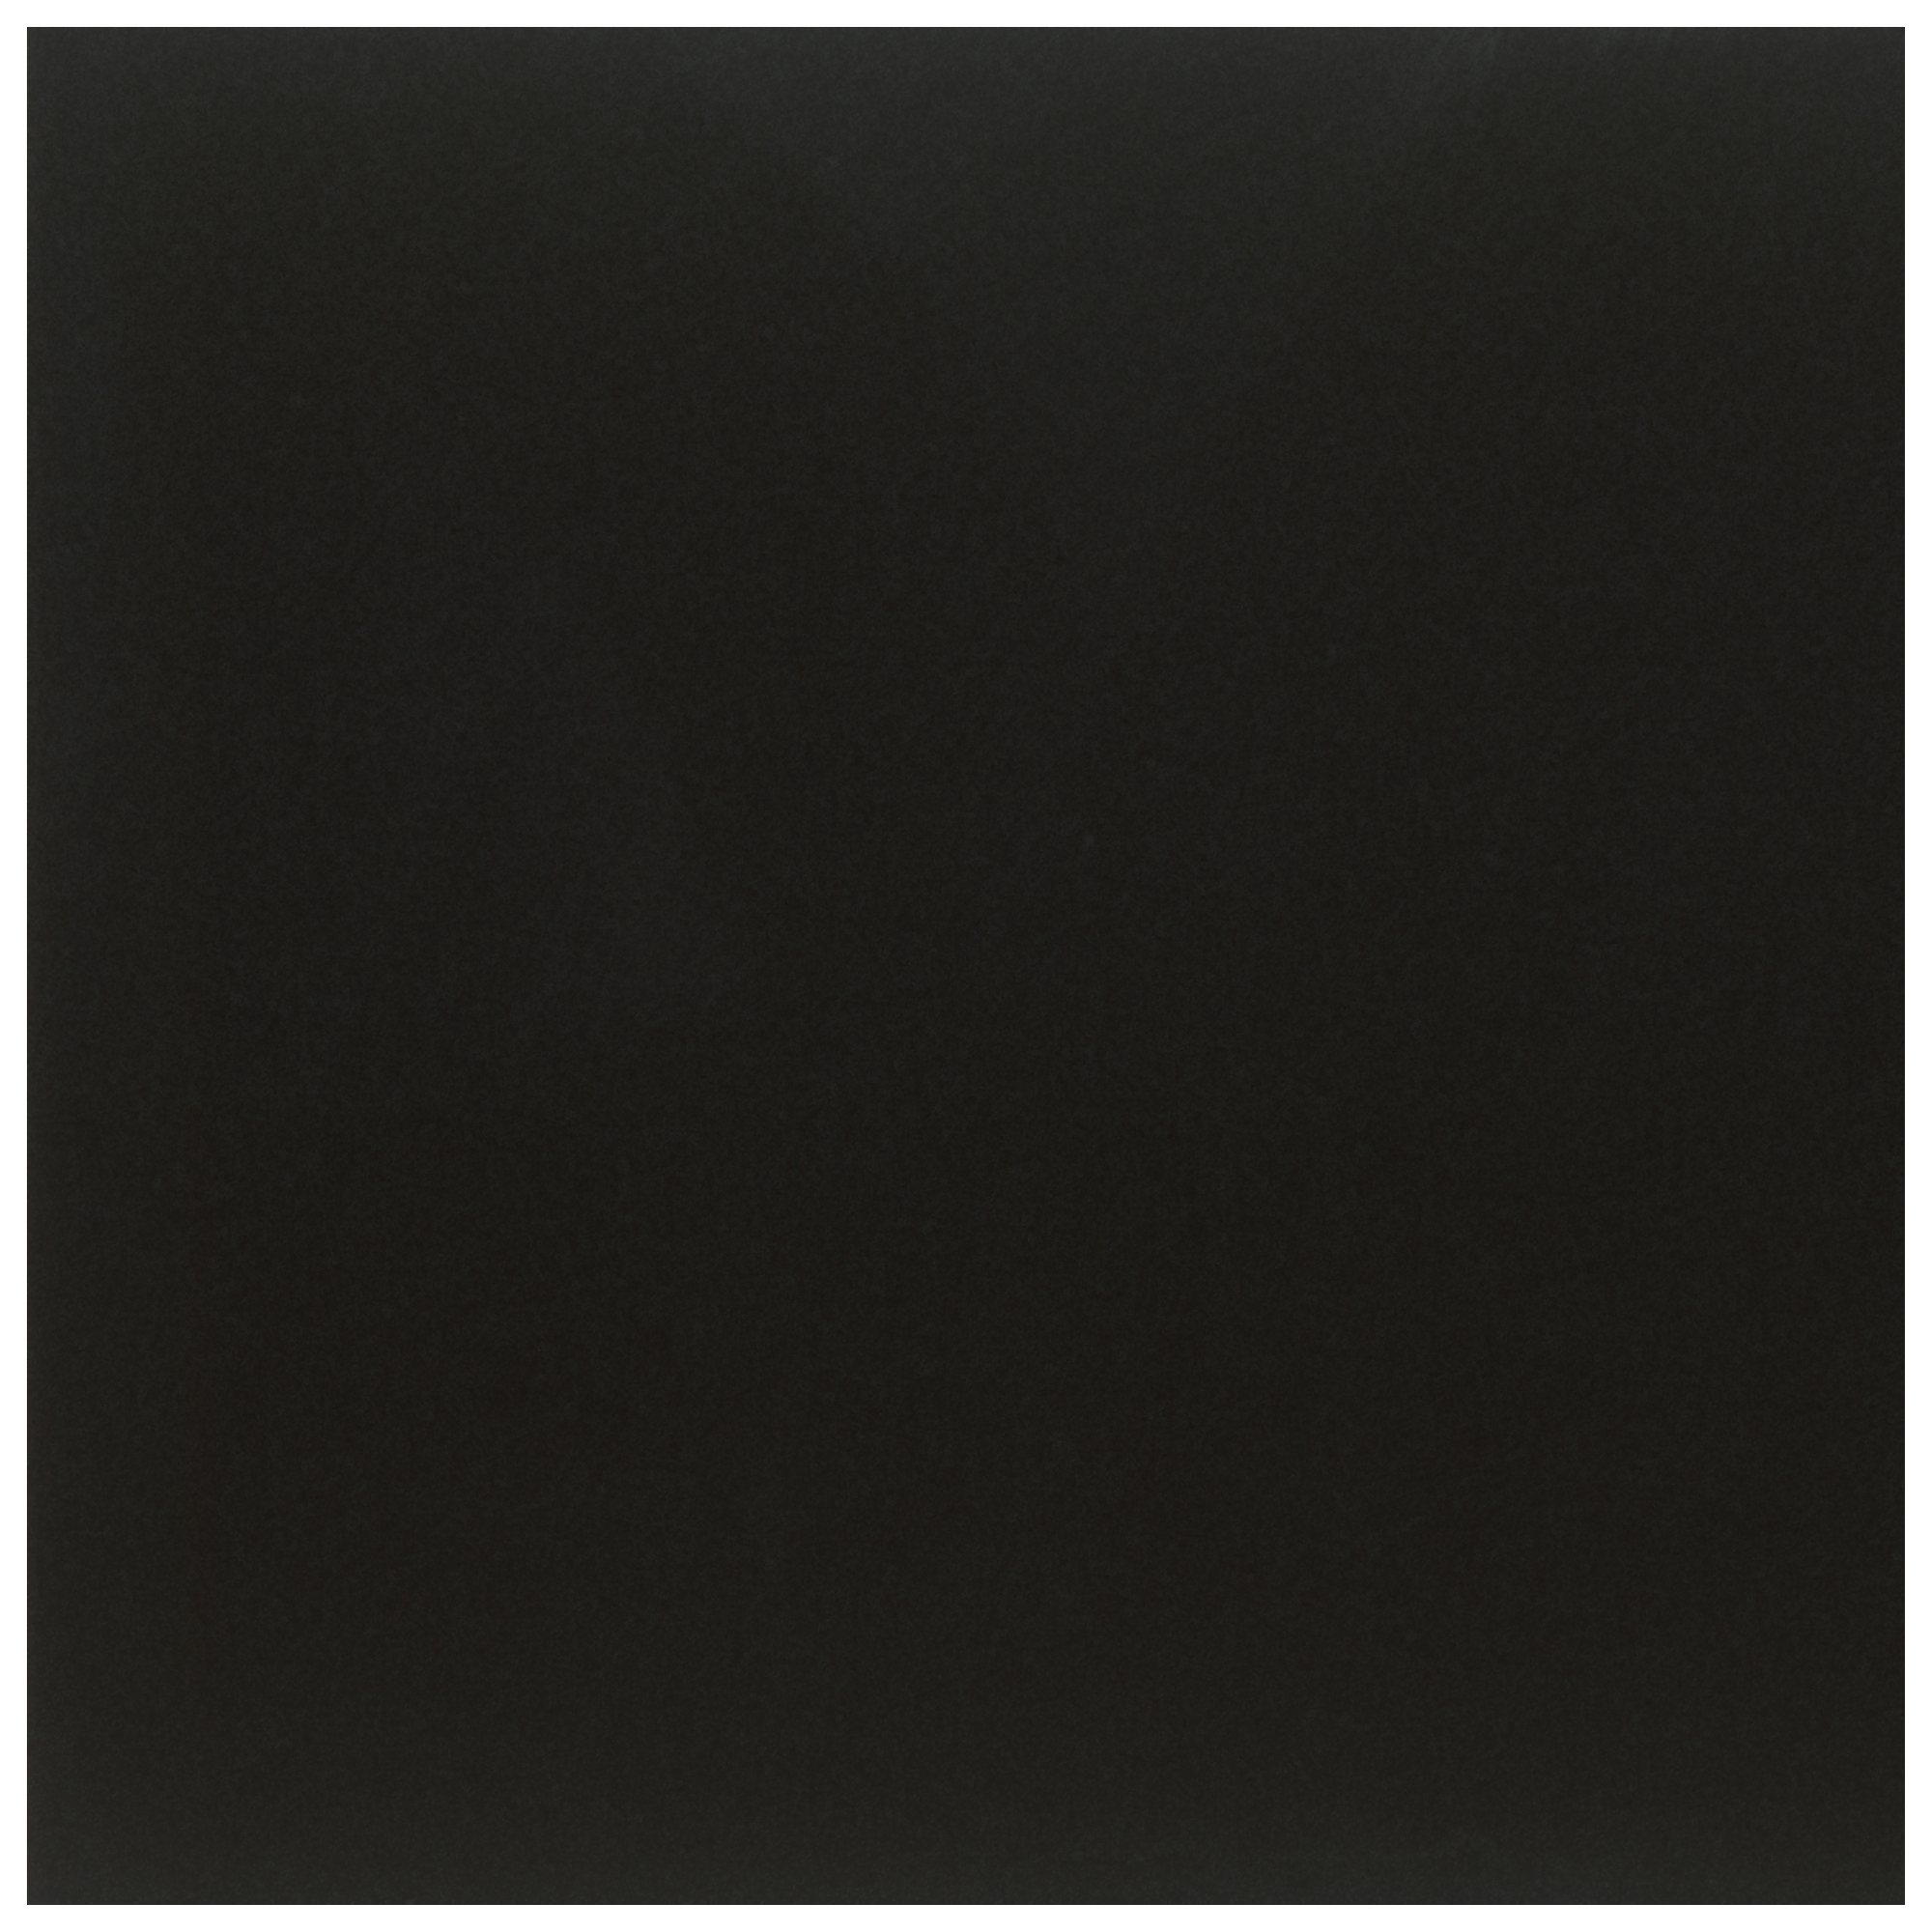 Colormatte Black 59x59cm